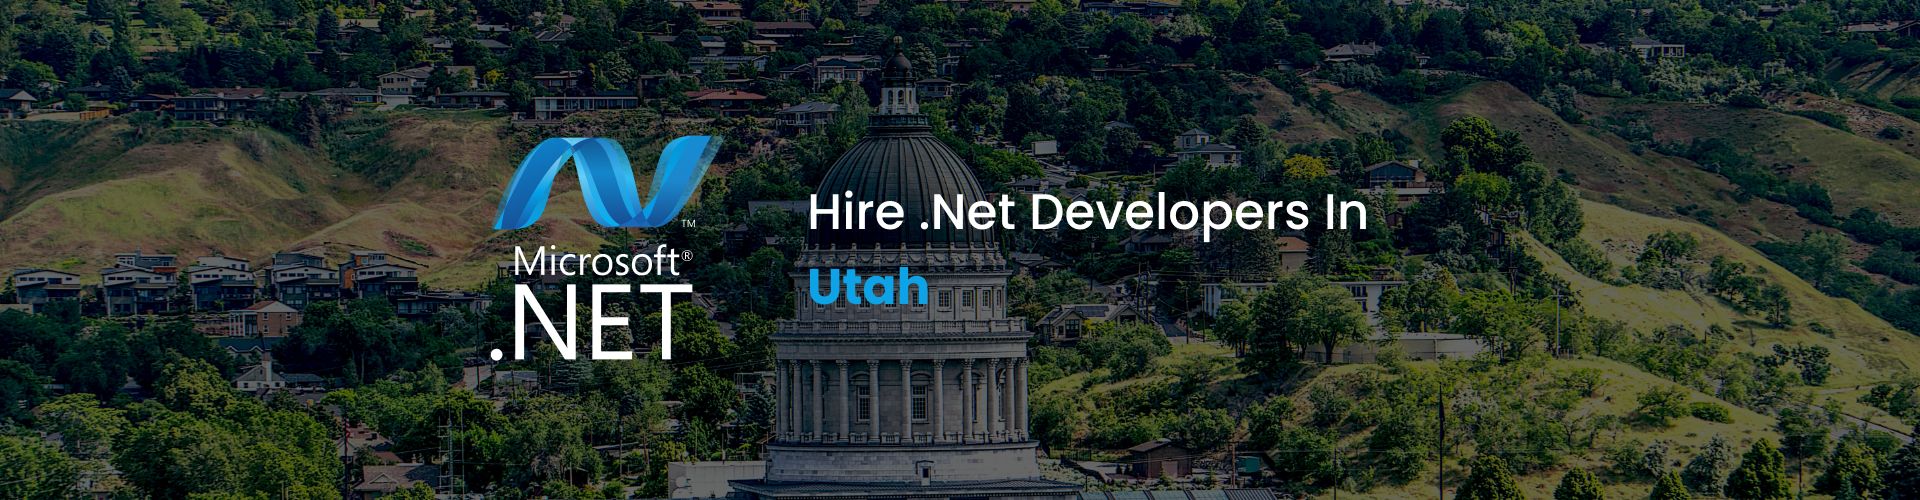 hire dot net developers utah